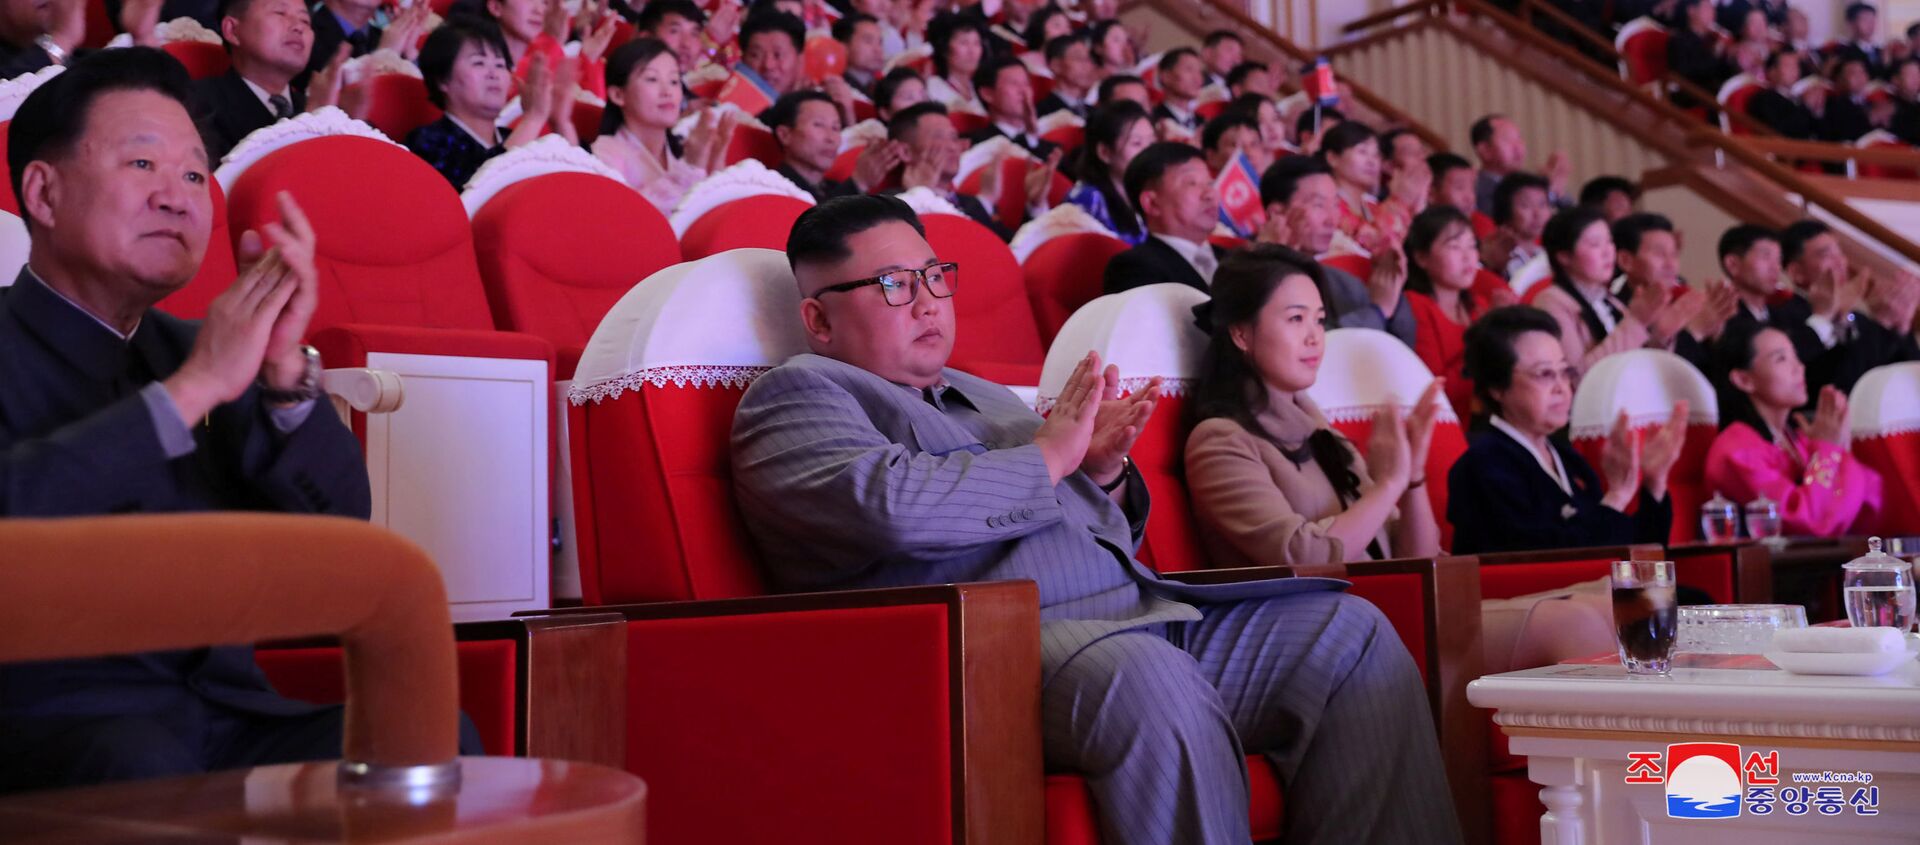 Kim Jong-un con su esposa y tía durante un concierto con motivo del Año Nuevo Lunar - Sputnik Mundo, 1920, 26.01.2020